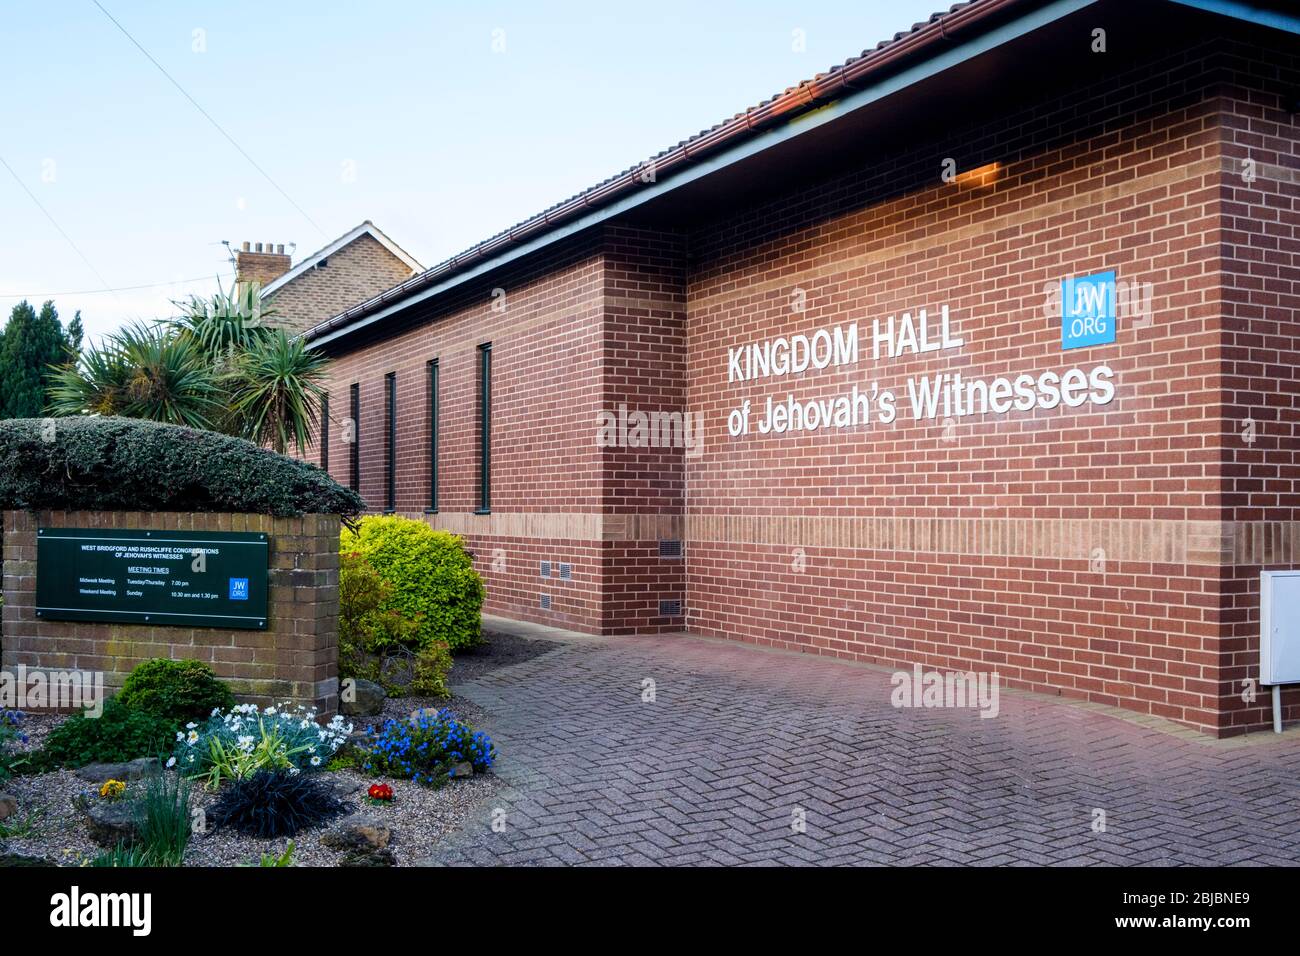 La salle du Royaume des témoins de Jéhovah, West Bridgford, Notinghamshire, Angleterre, Royaume-Uni Banque D'Images